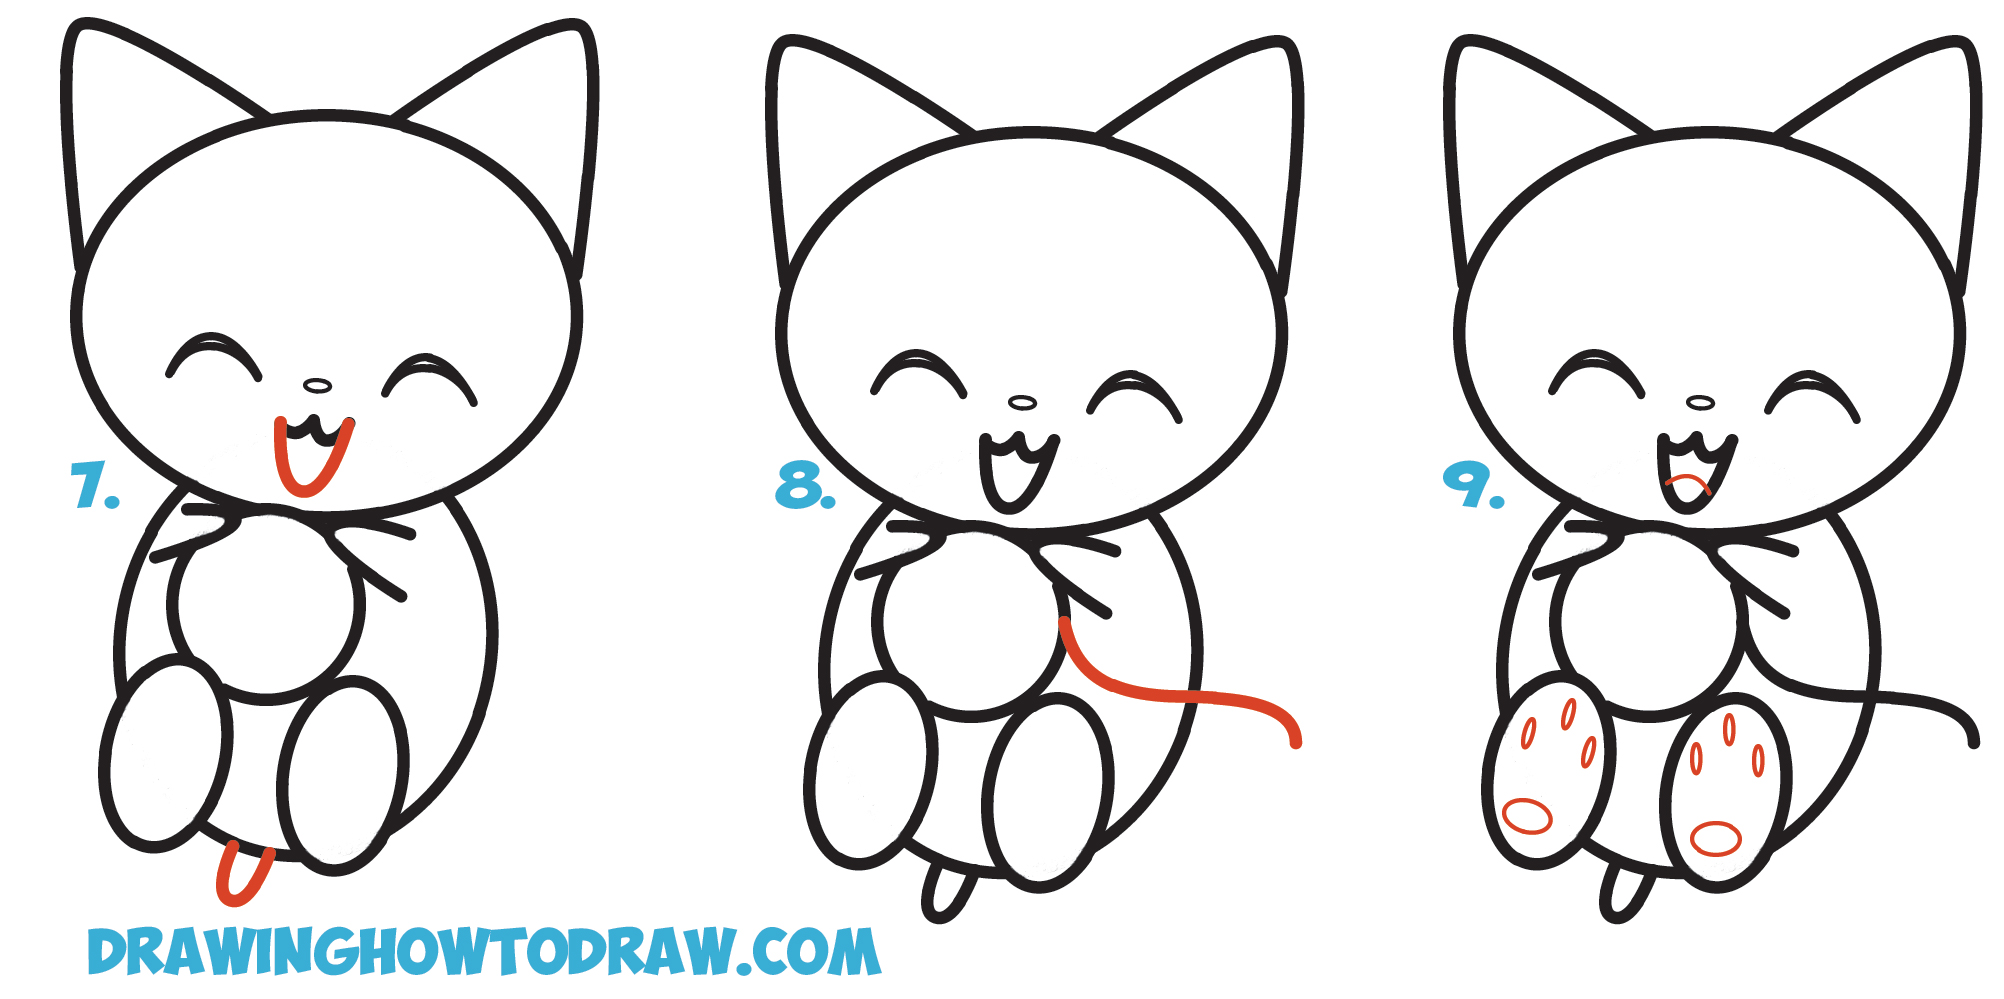 Learn How to Draw Cute Kawaii / Chibi / Cartoon Kitten / Cat Playing